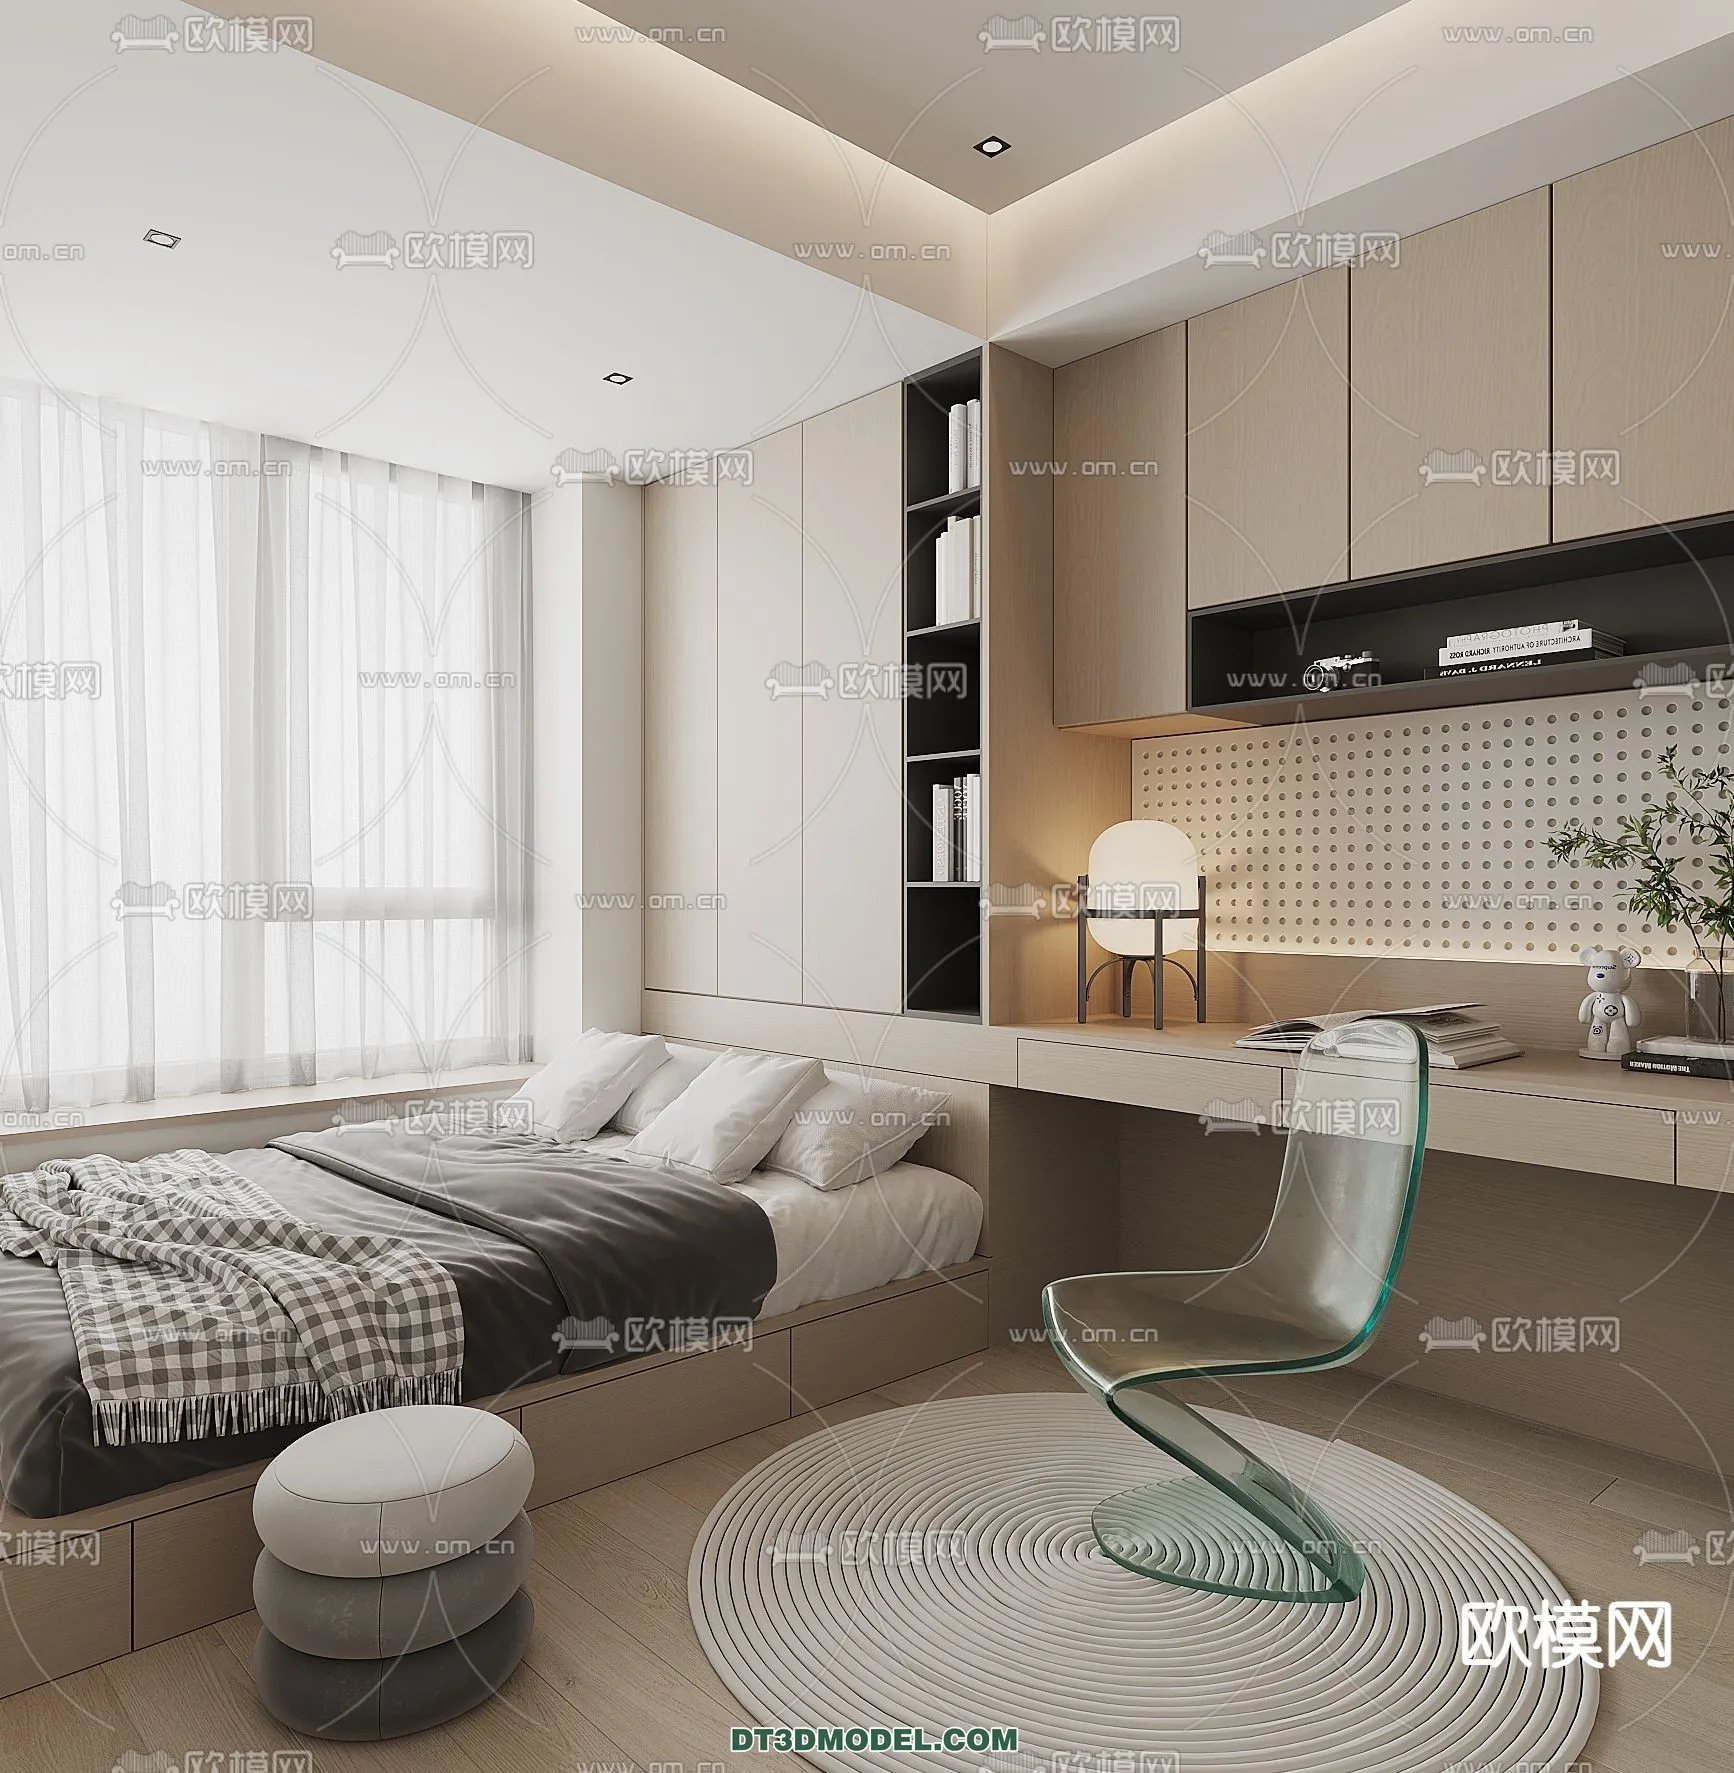 Tatami Bedroom – Japan Bedroom – 3D Scene – 043